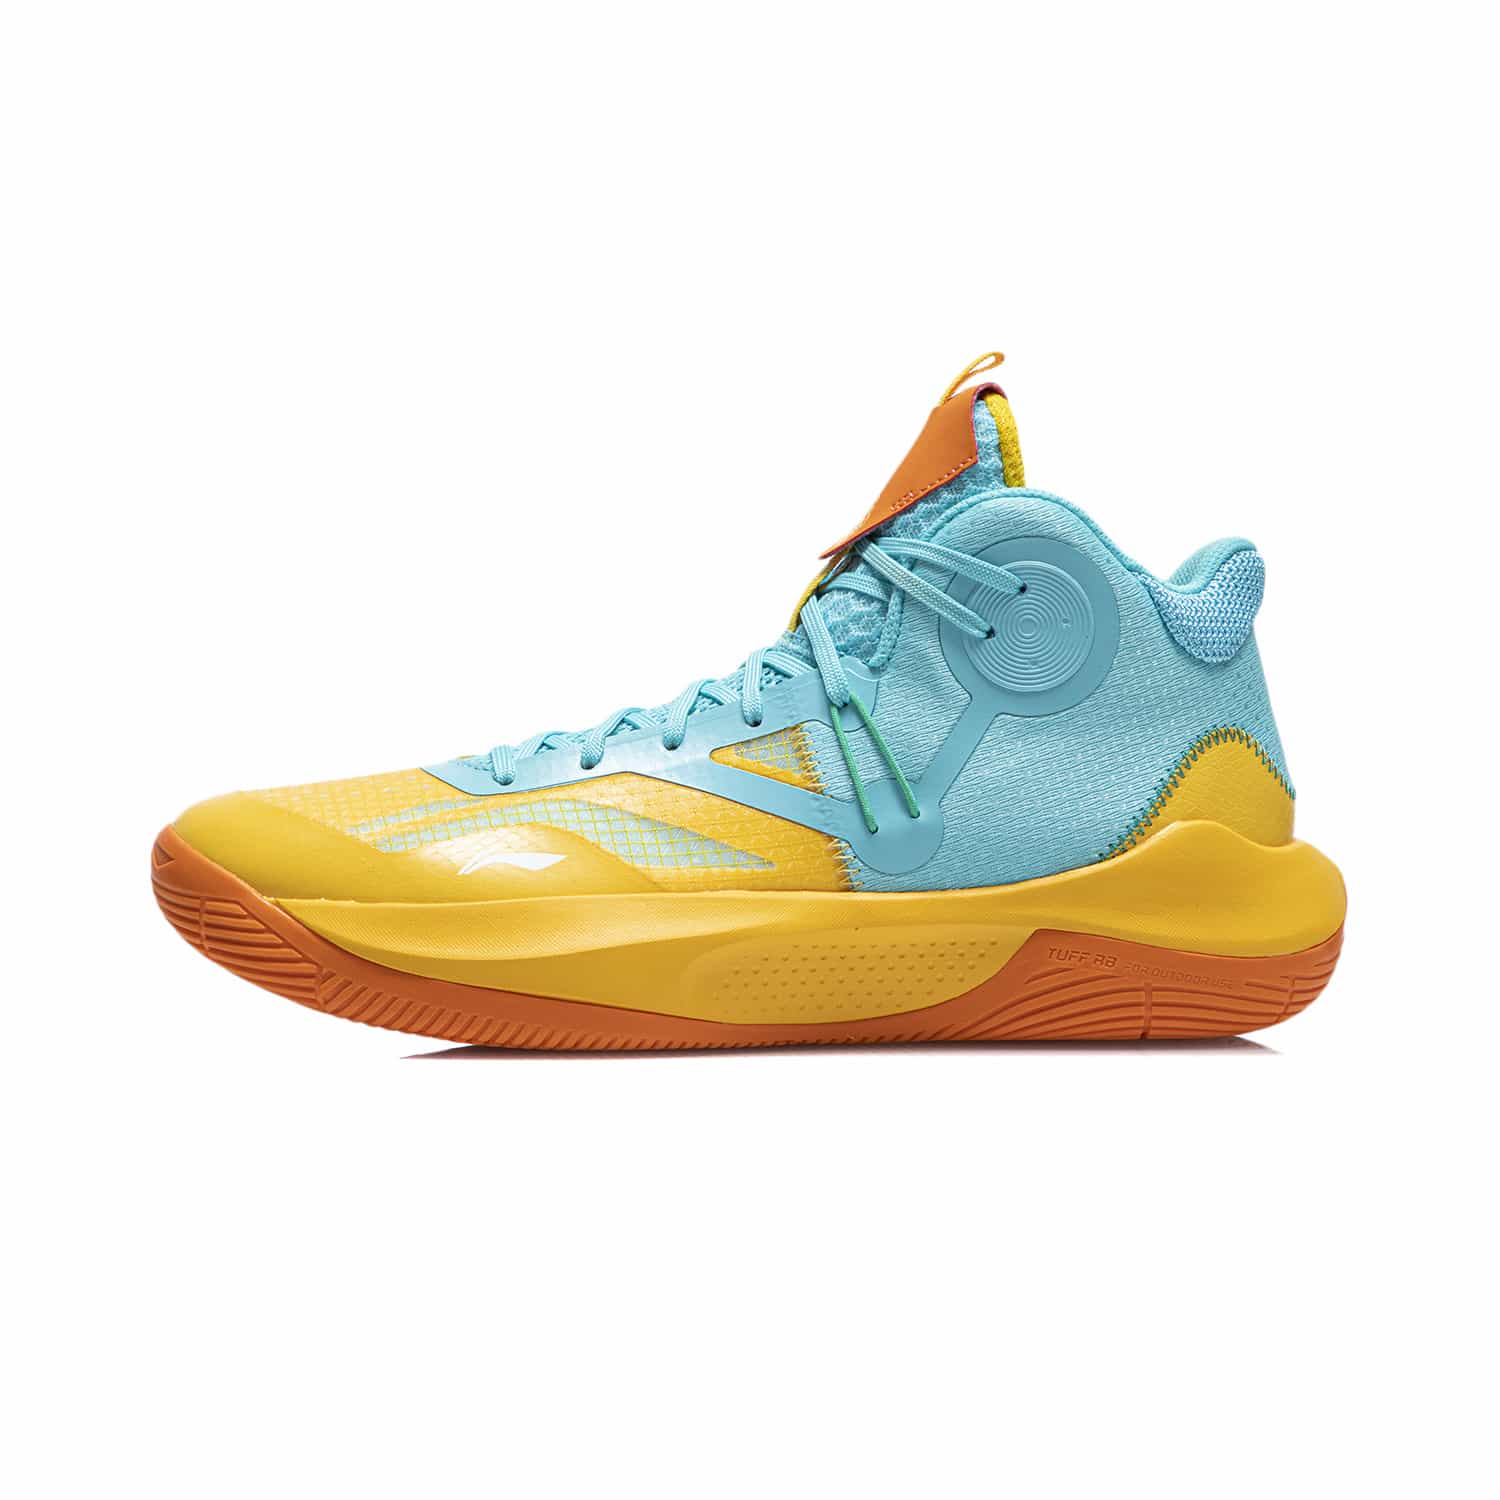 音速IX Team 中筒實戰籃球鞋 - 亮水藍/鉻黃色